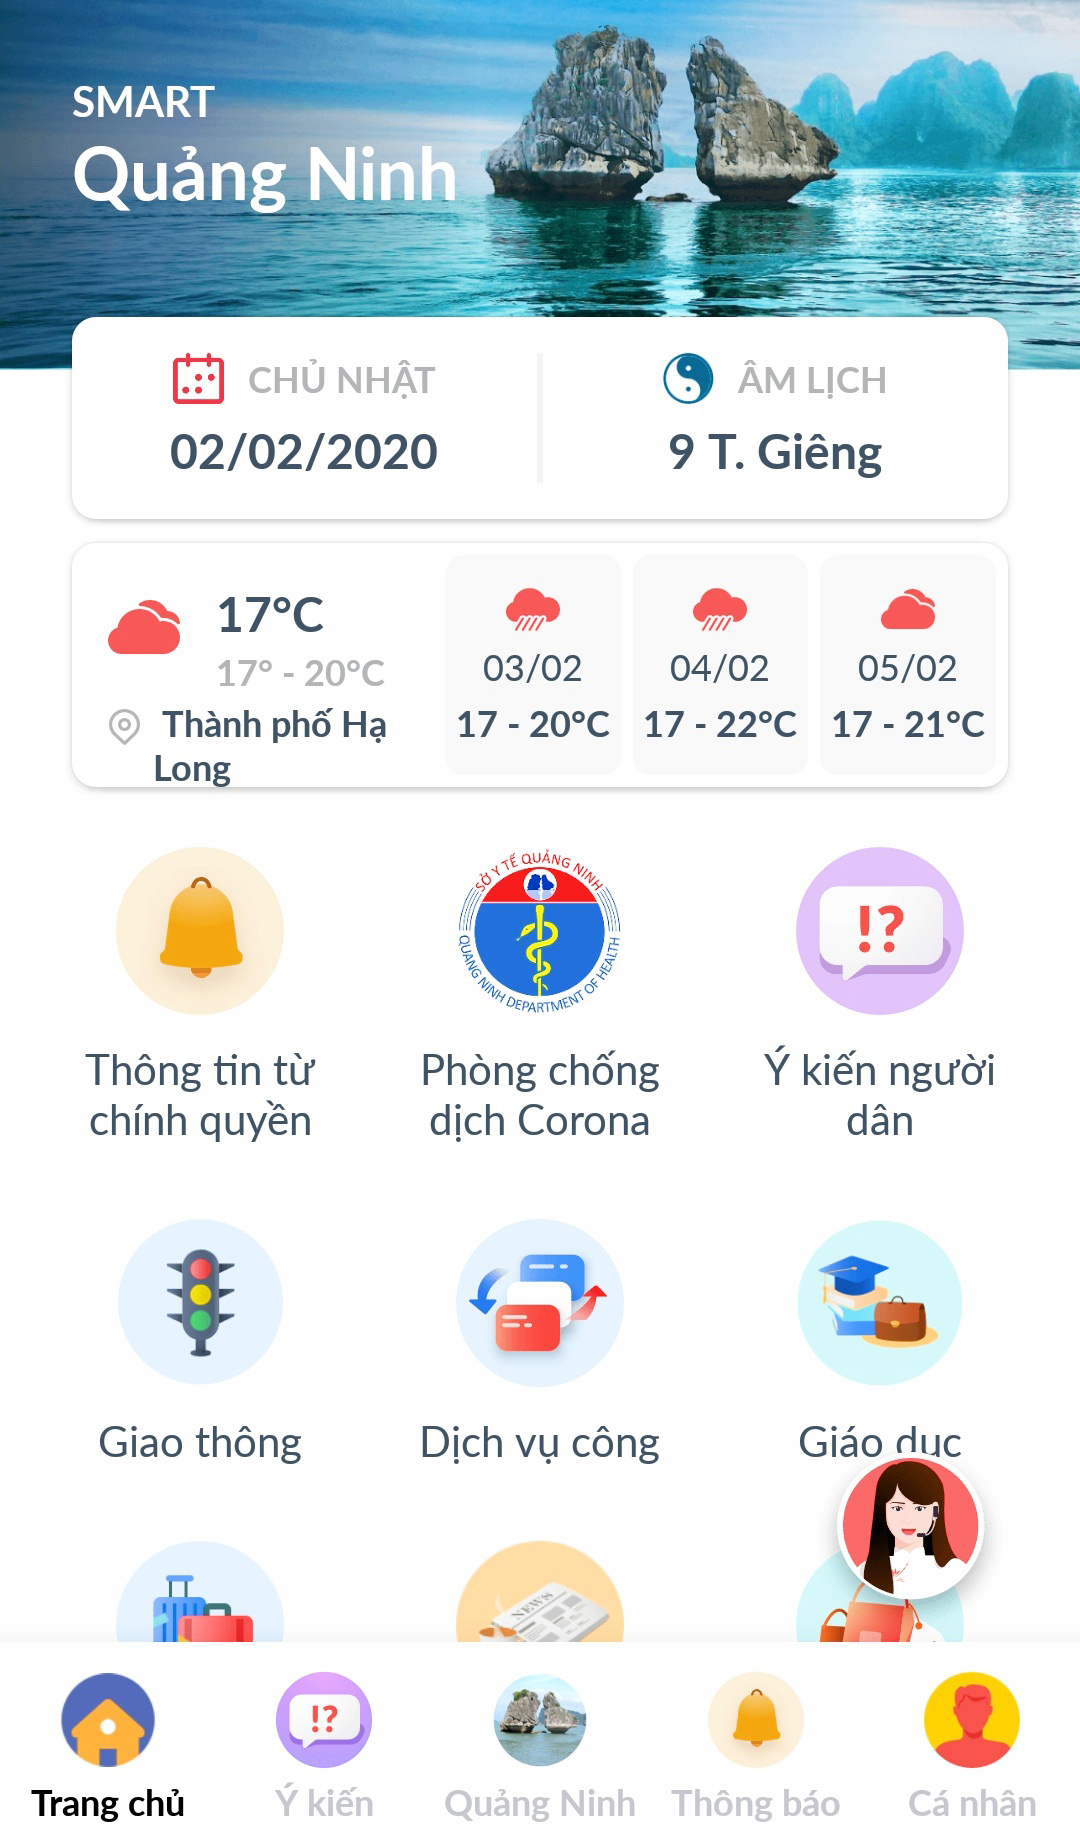 Các tiện ích trong ứng dụng Smart Quảng Ninh.